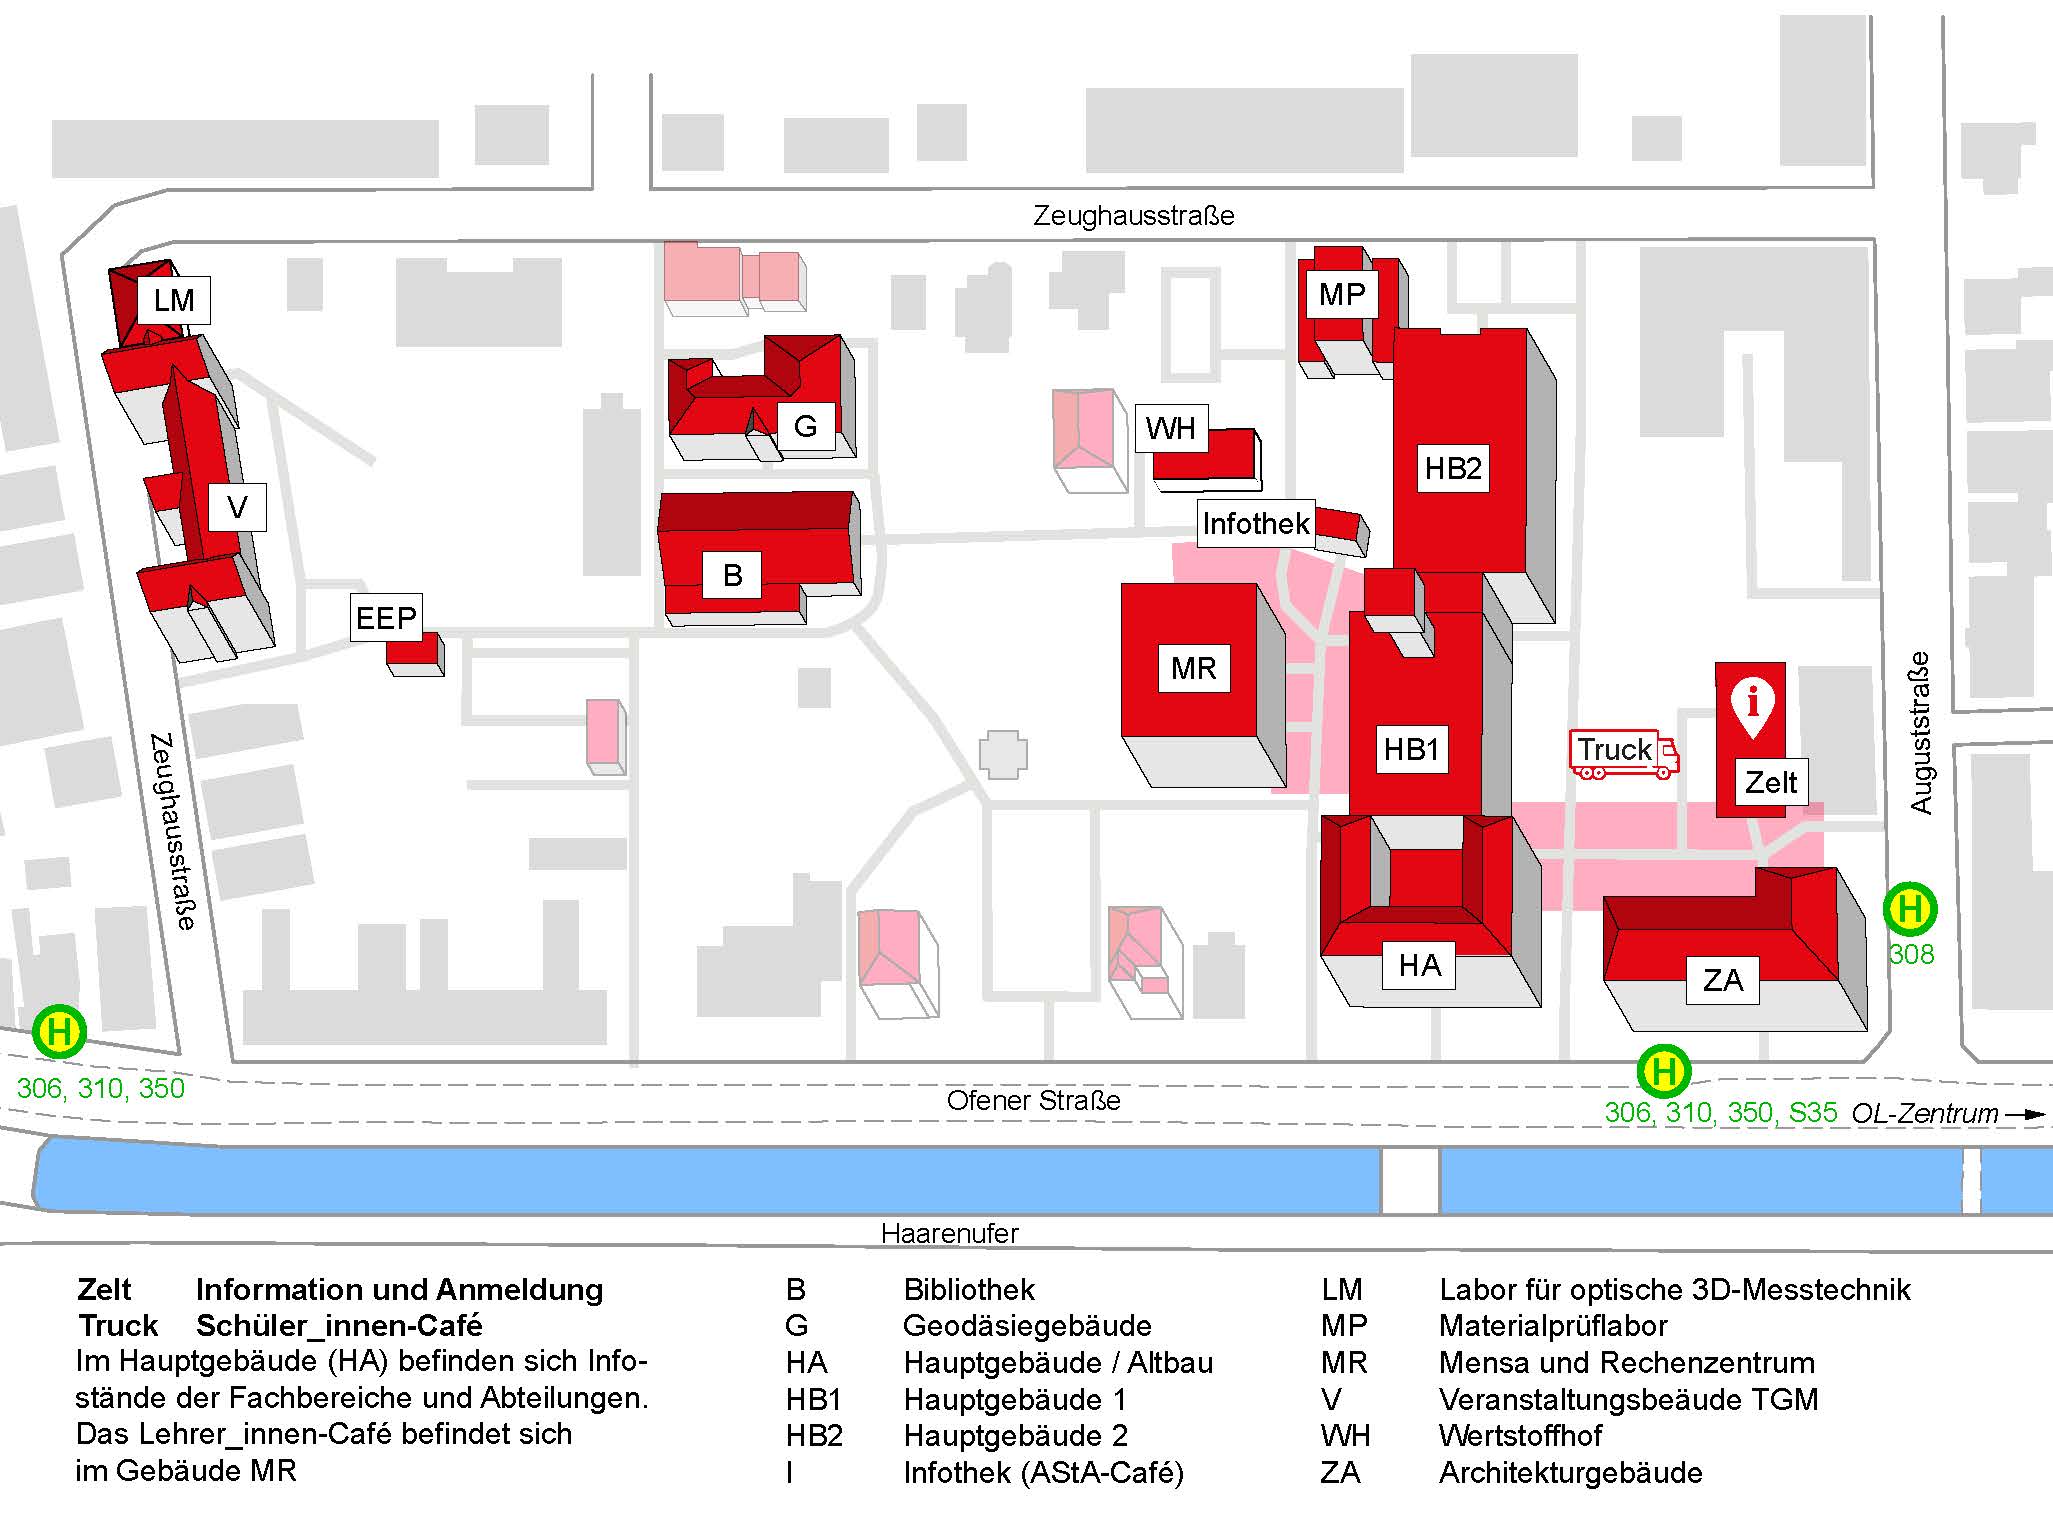 Lageplan und Veranstaltungsorte des Campustages in Oldenburg